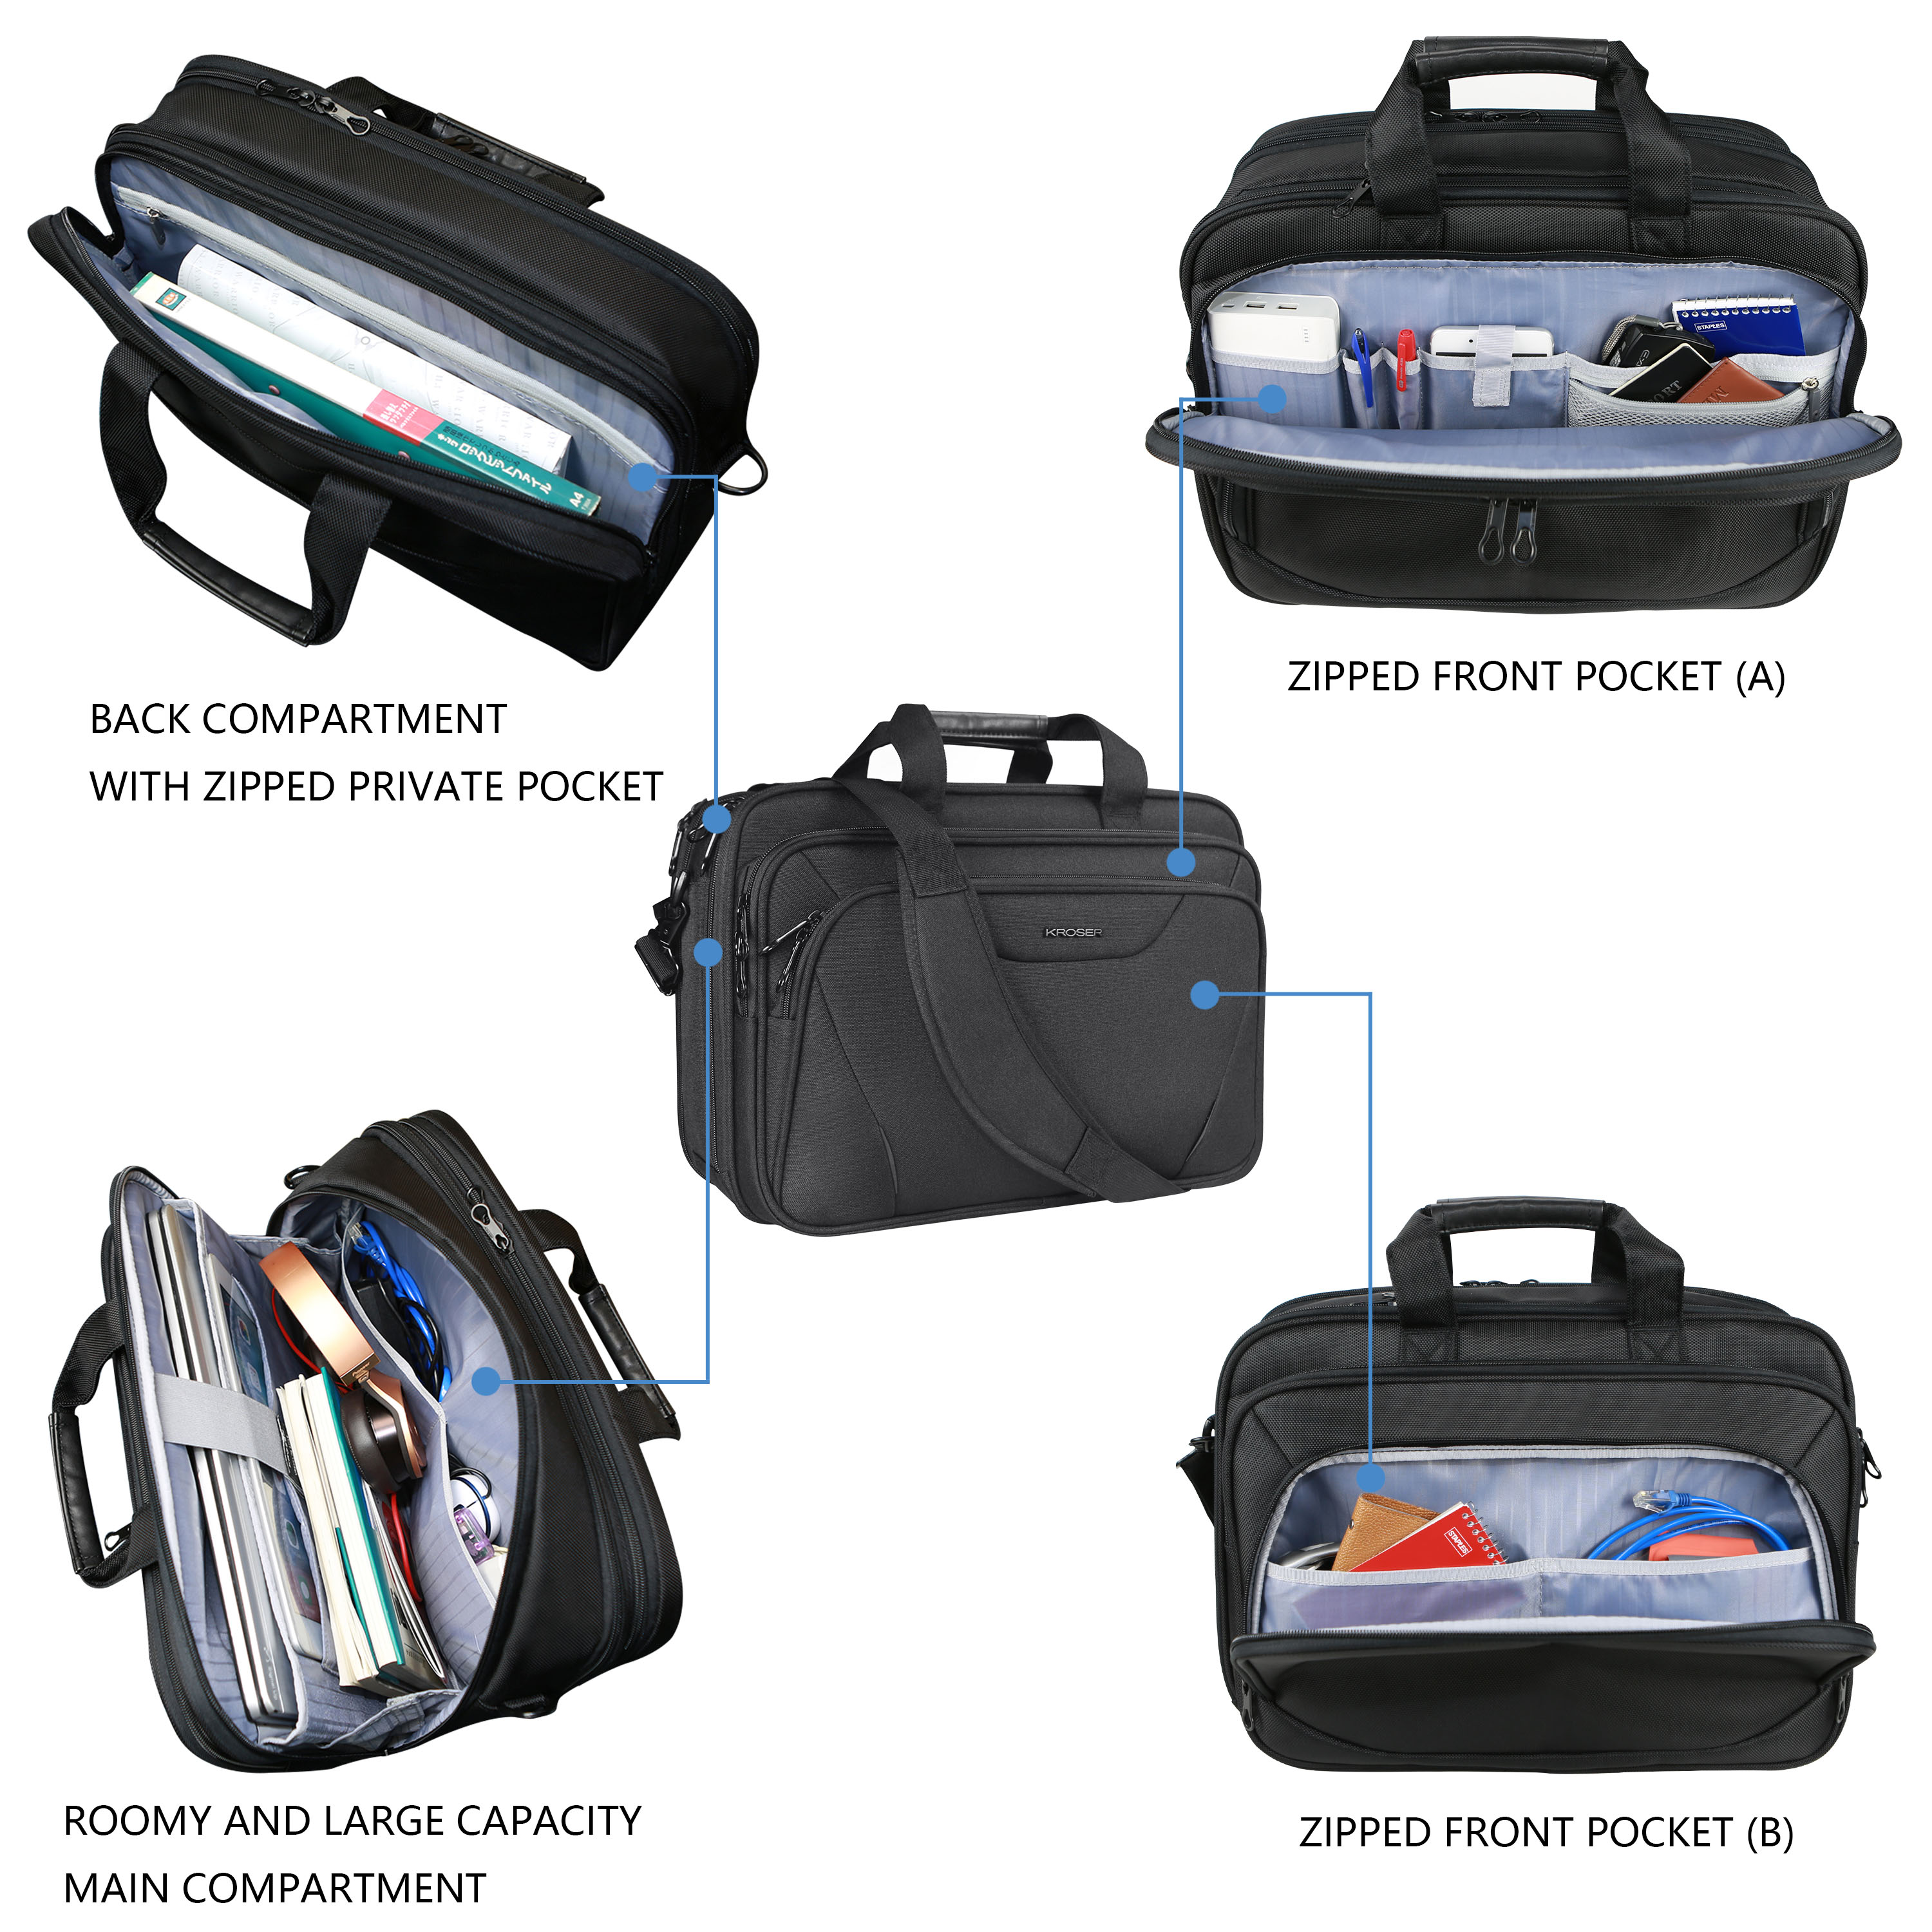 KROSER 18"Laptop Bag Laptop Briefcase Fits Up to 17.3" Laptop Expandable Shoulder Bag Computer Bag, Black - image 4 of 7